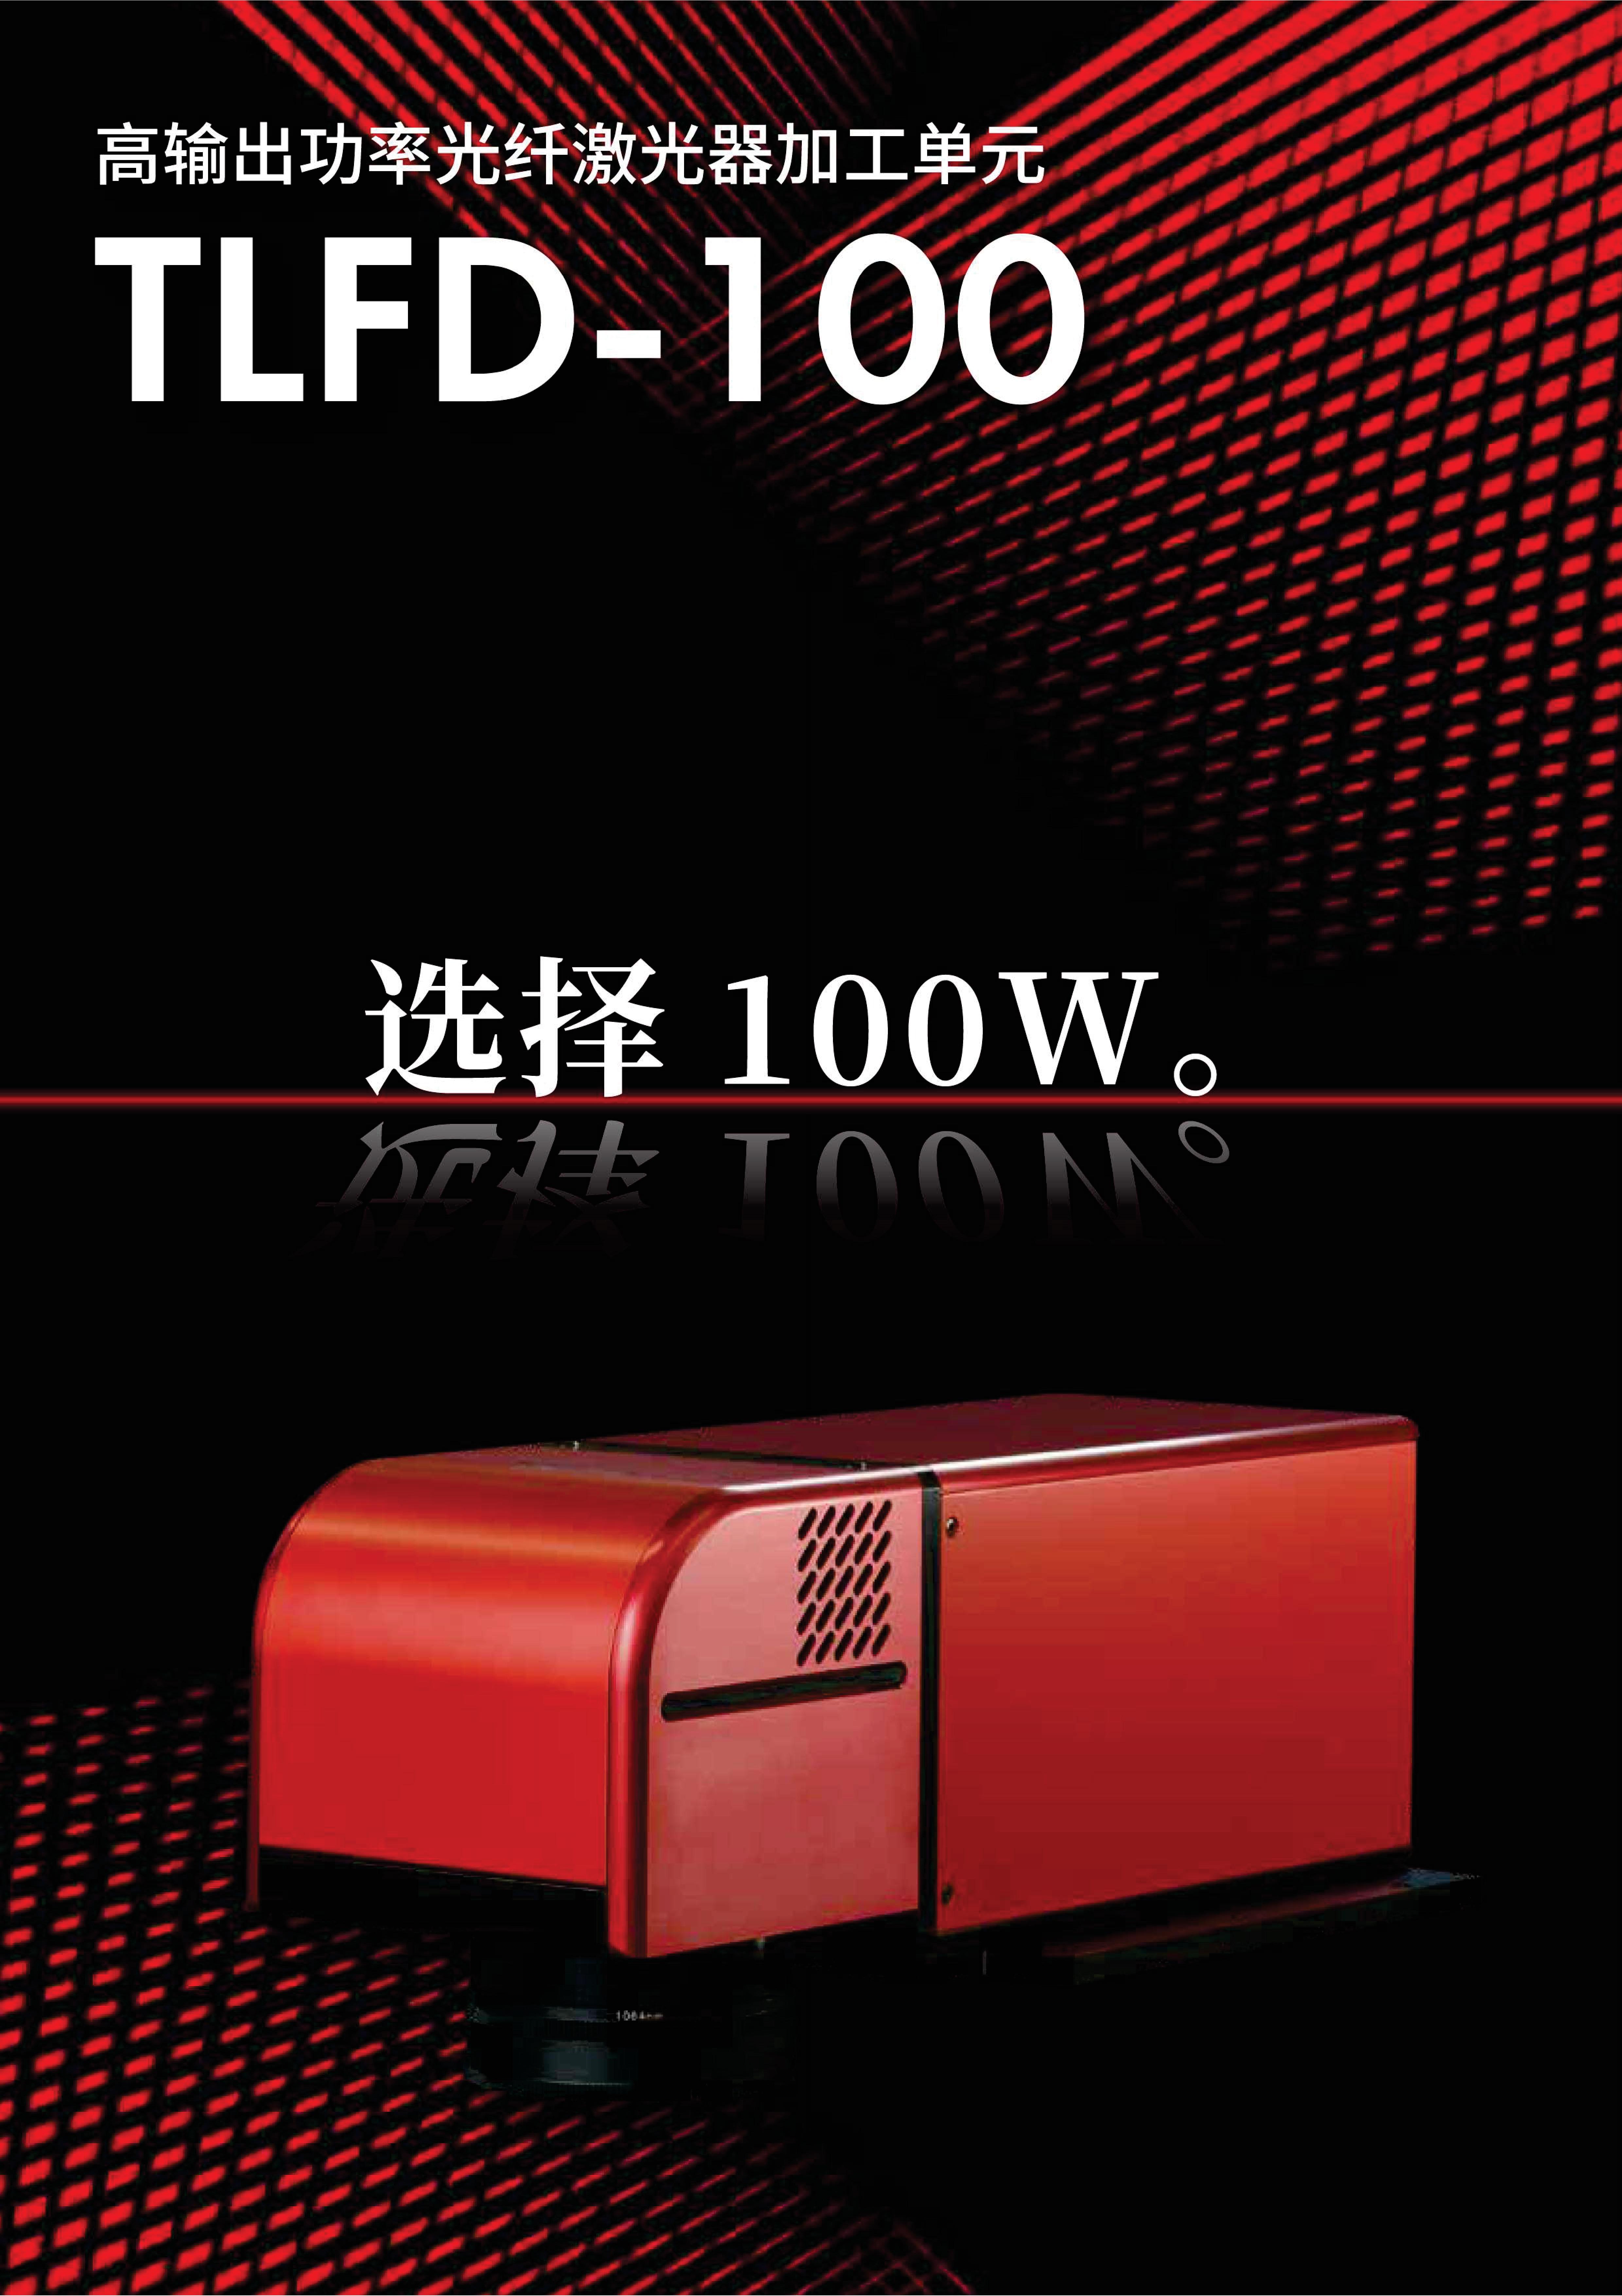 TLFD-100